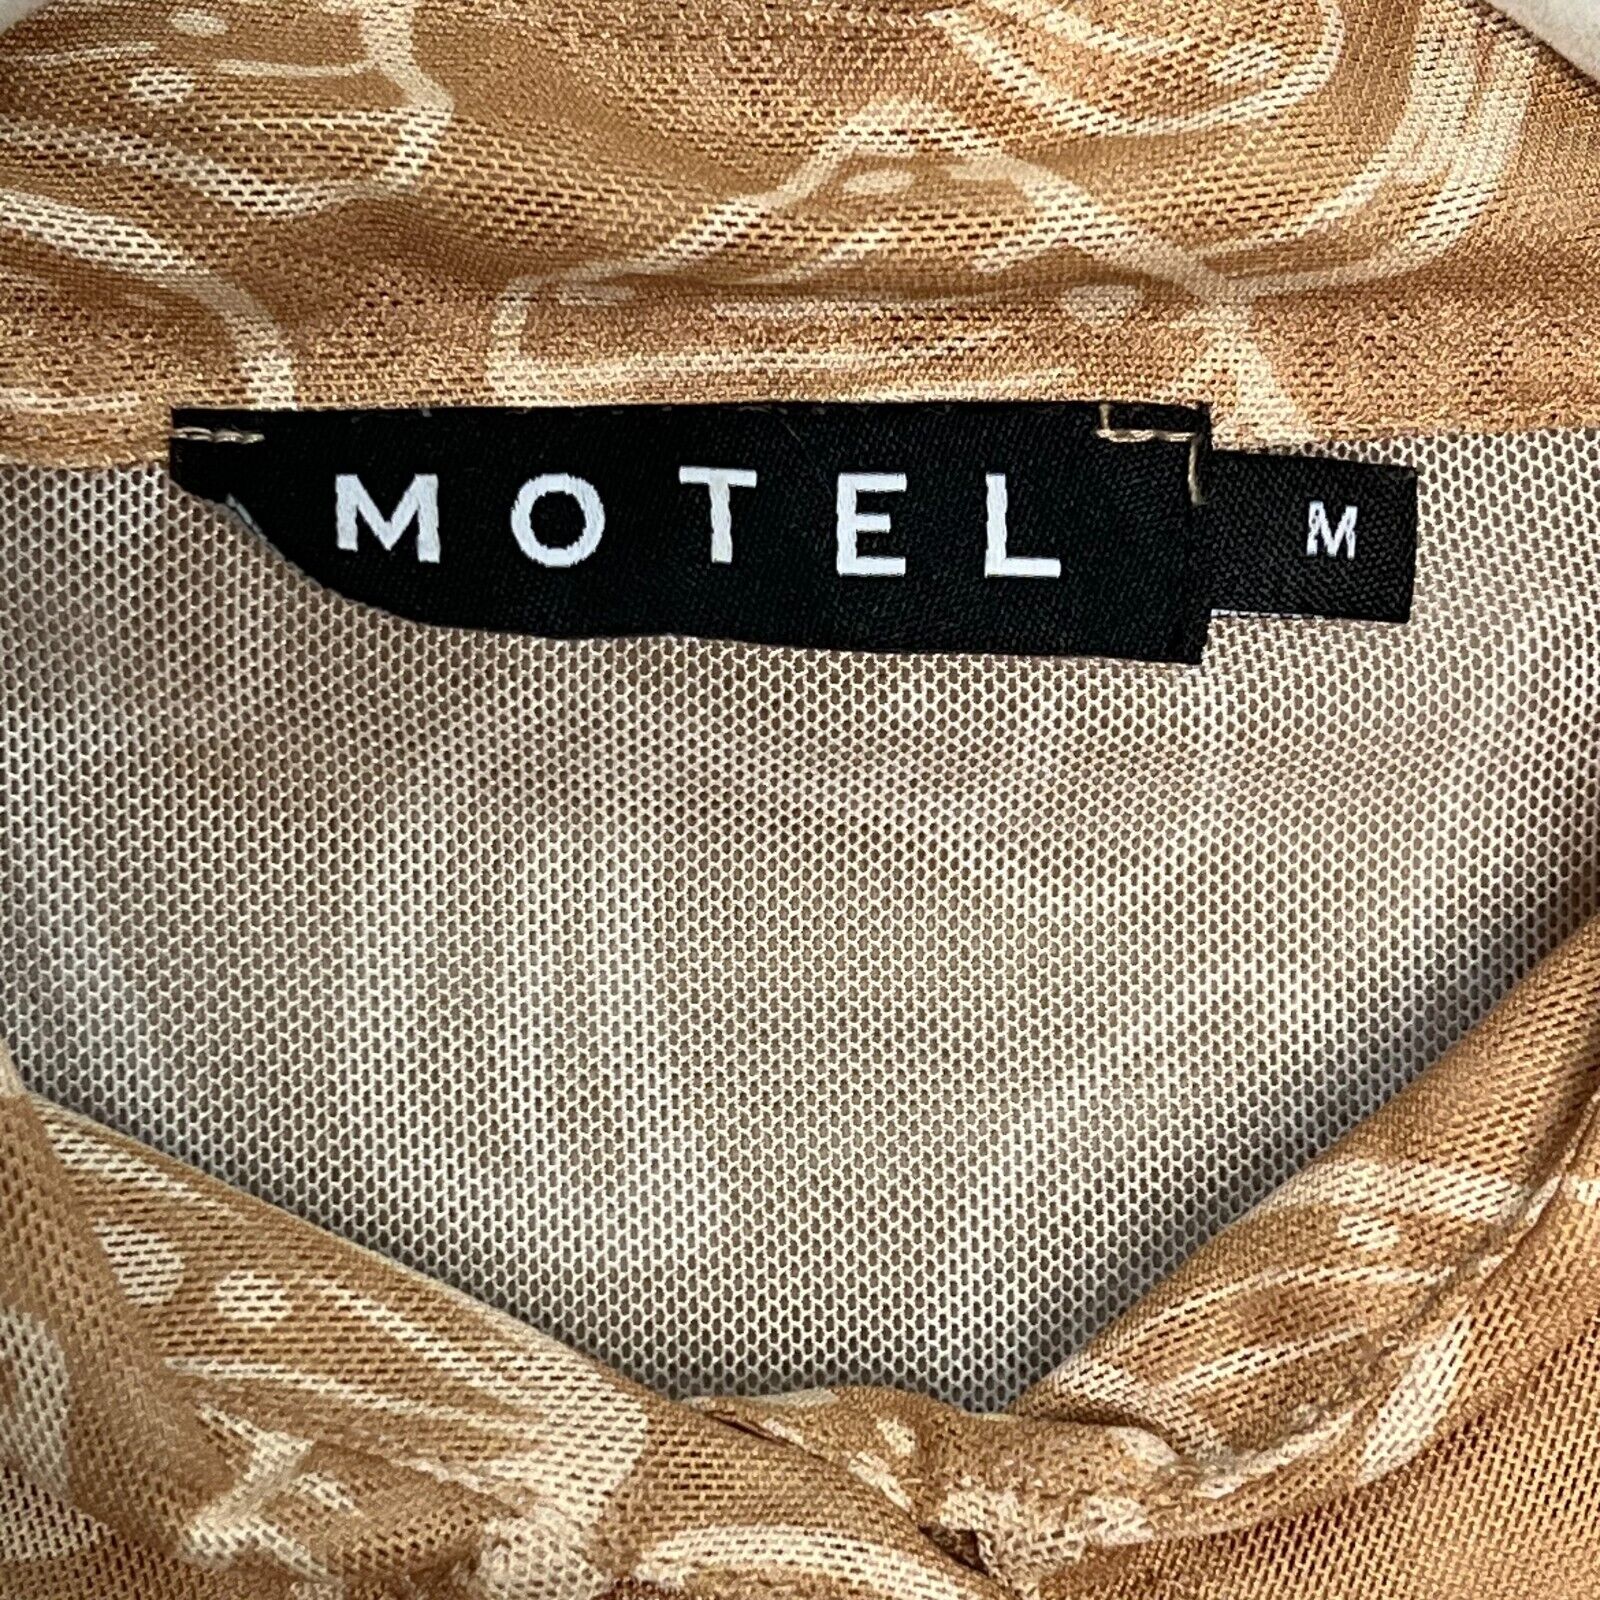 MOTEL Keyla Shirt In Tan Mushroom Size Medium